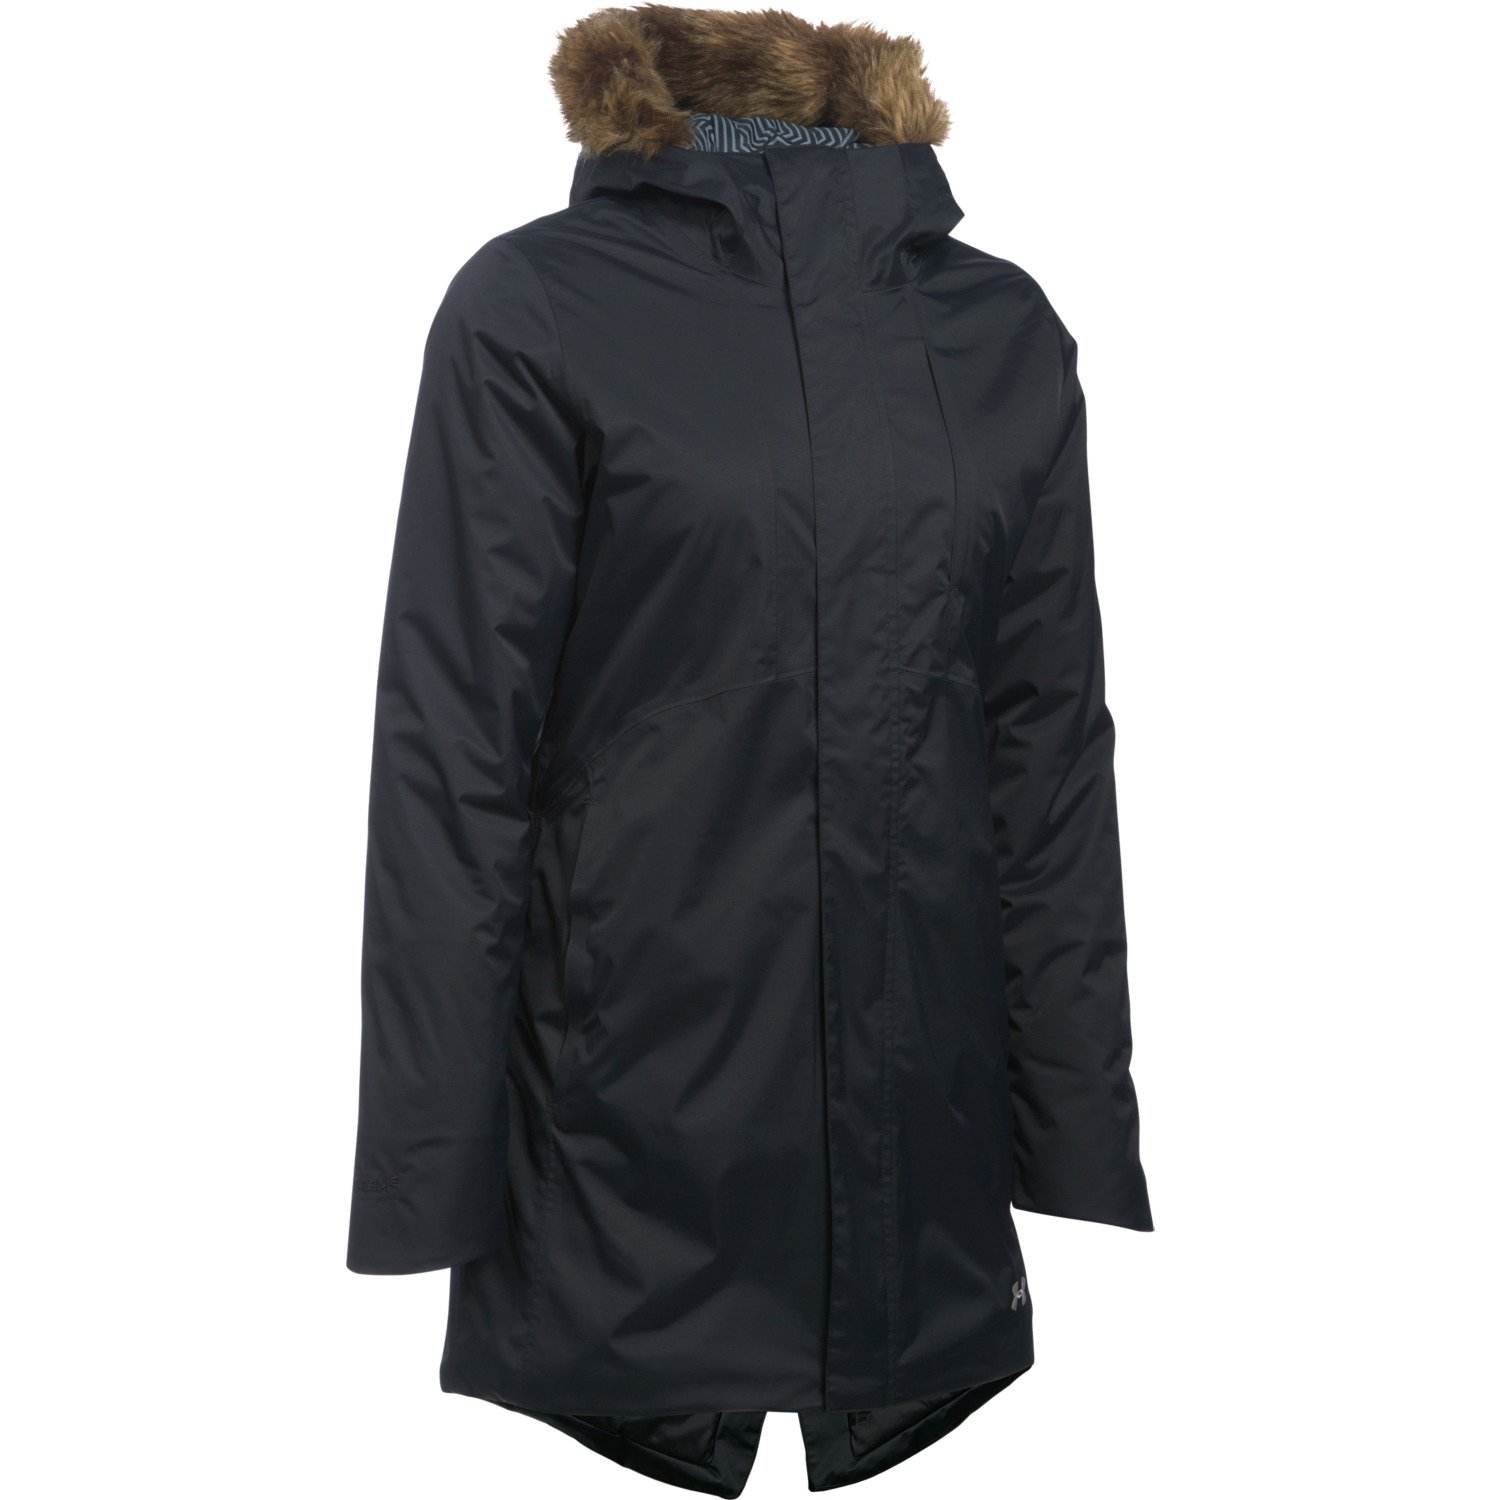 Women's Jackets & Outerwear | Winter, Rain & Spring Jackets